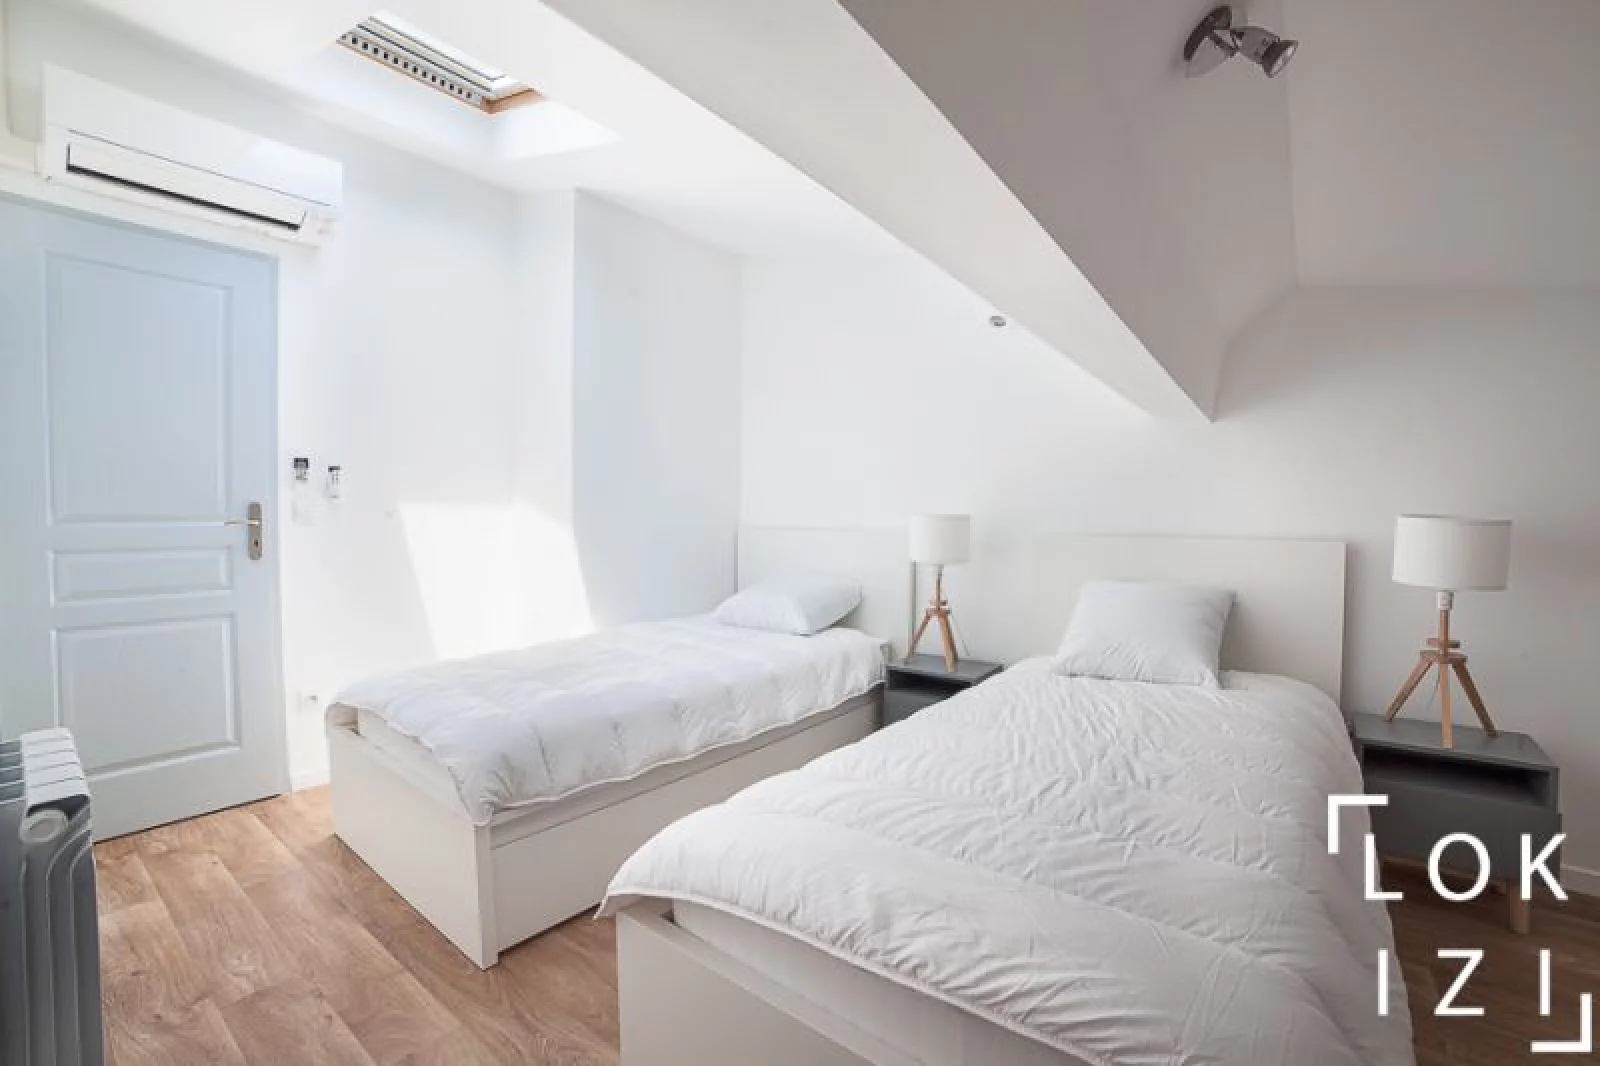 Location appartement meublé duplex 54m² (Bordeaux centre - St Bruno)